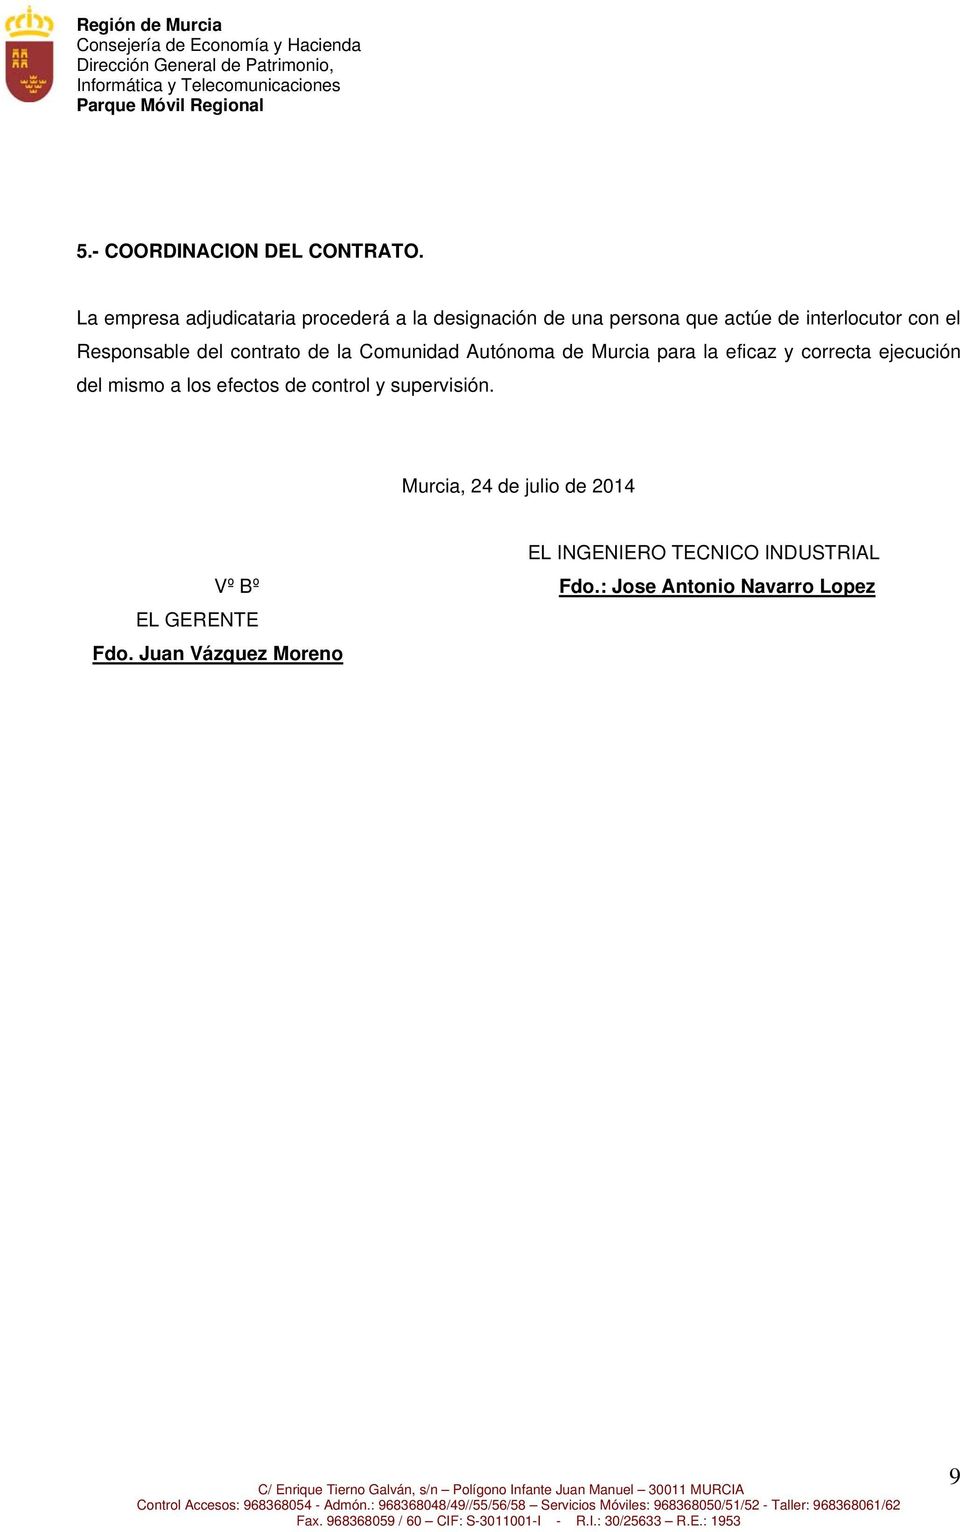 Responsable del contrato de la Comunidad Autónoma de Murcia para la eficaz y correcta ejecución del